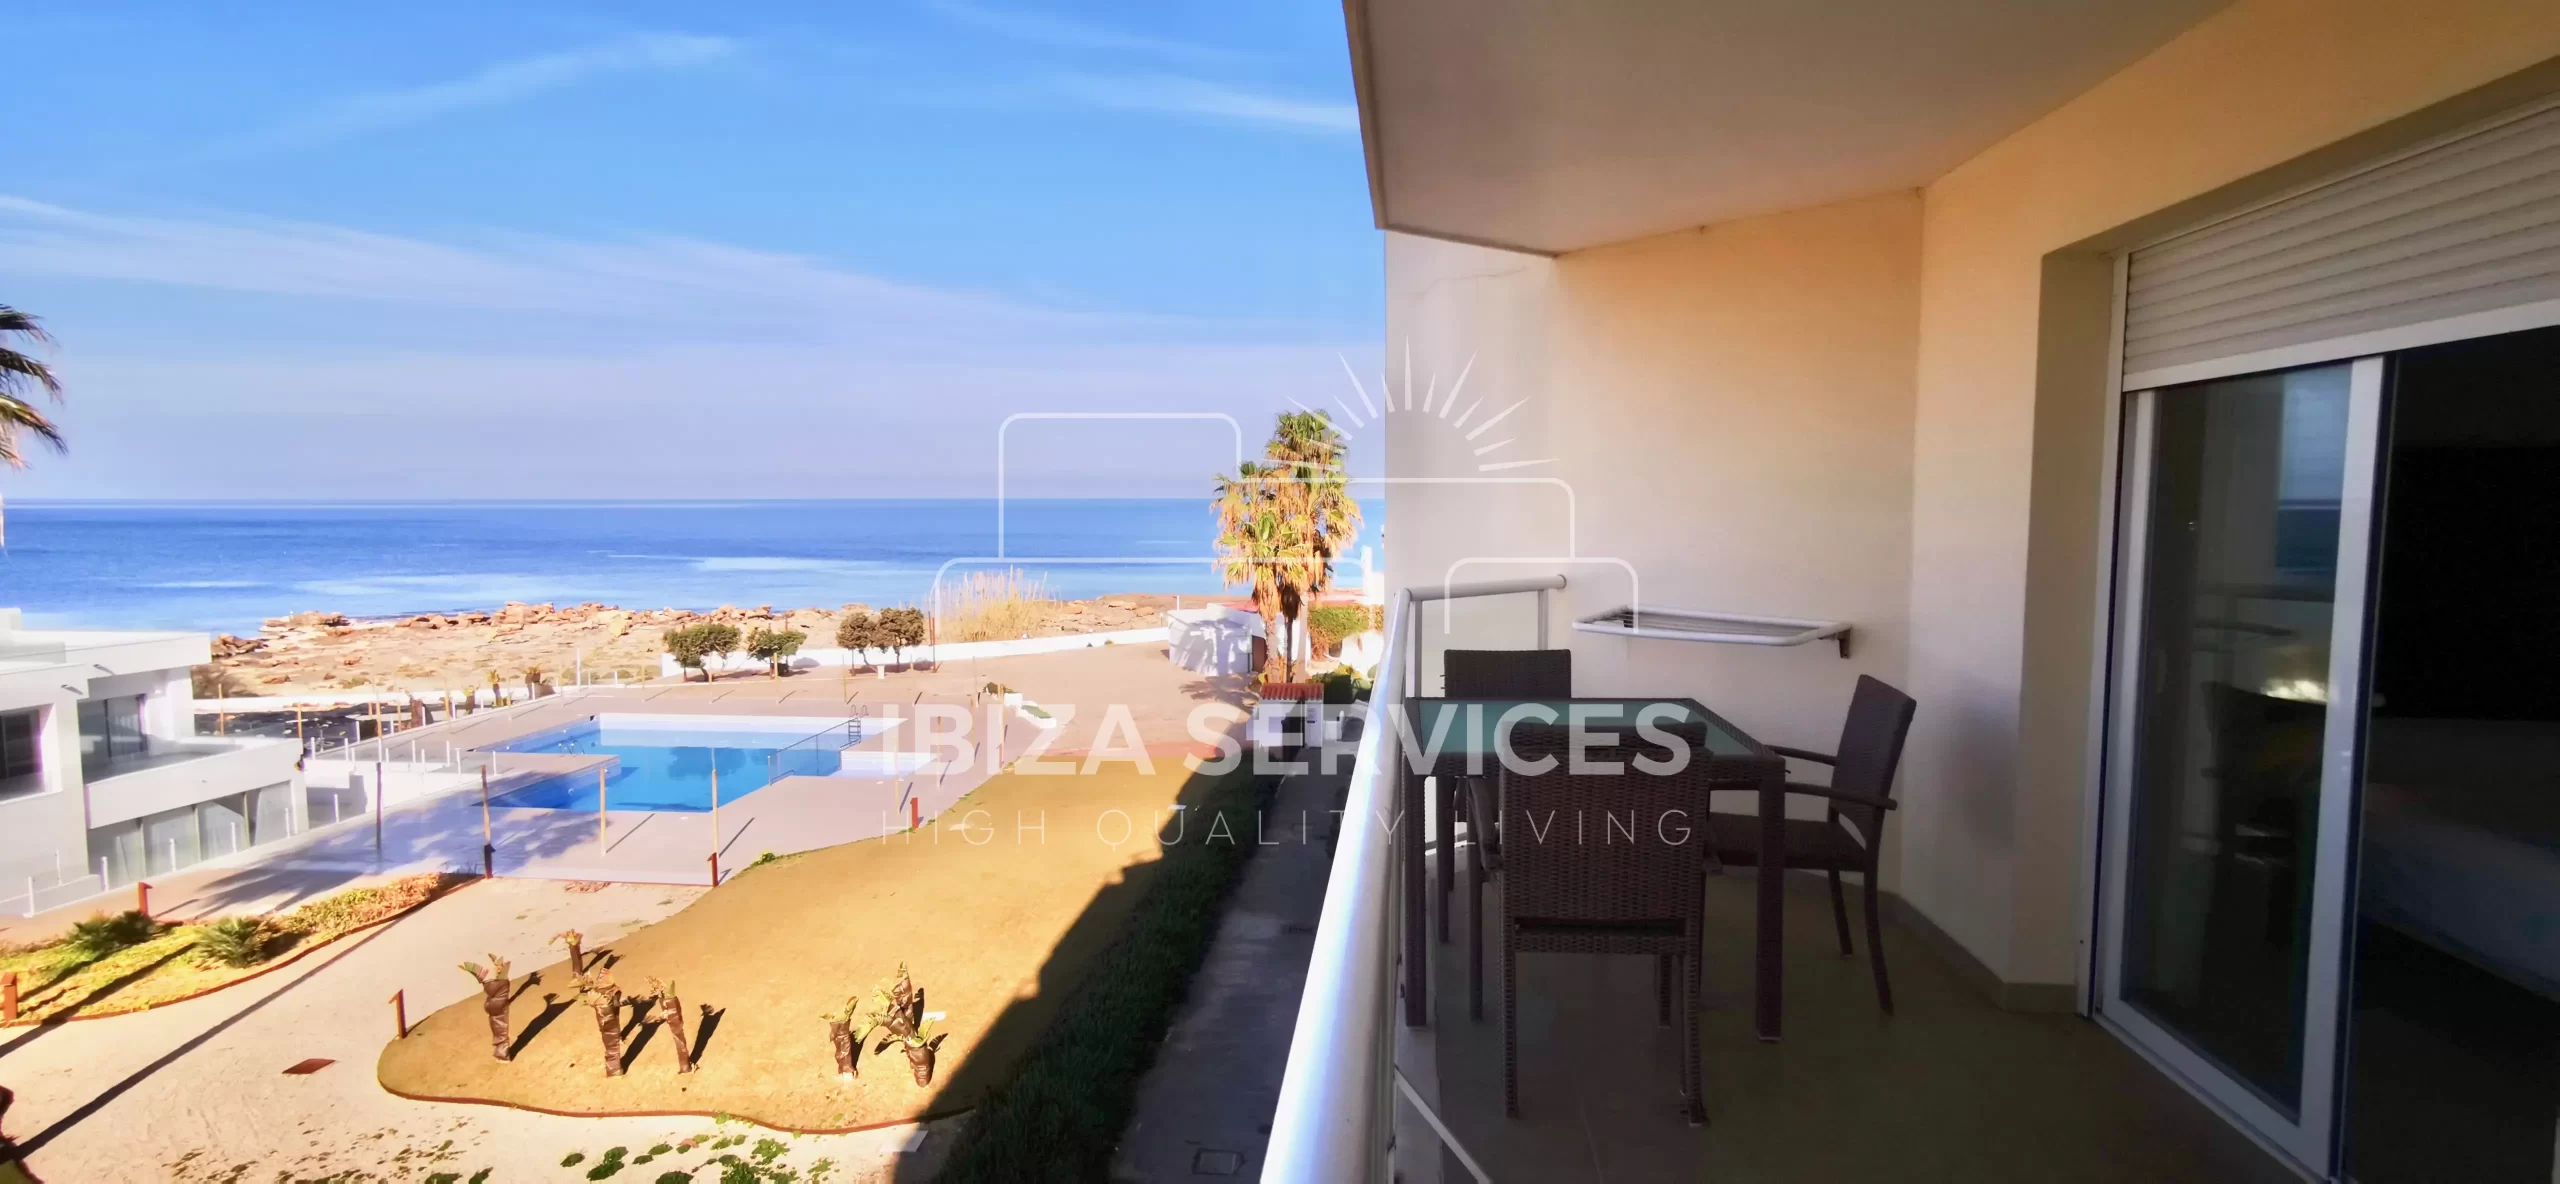 Apartamento espacioso con vistas al mar en venta en la costa oeste de Ibiza.